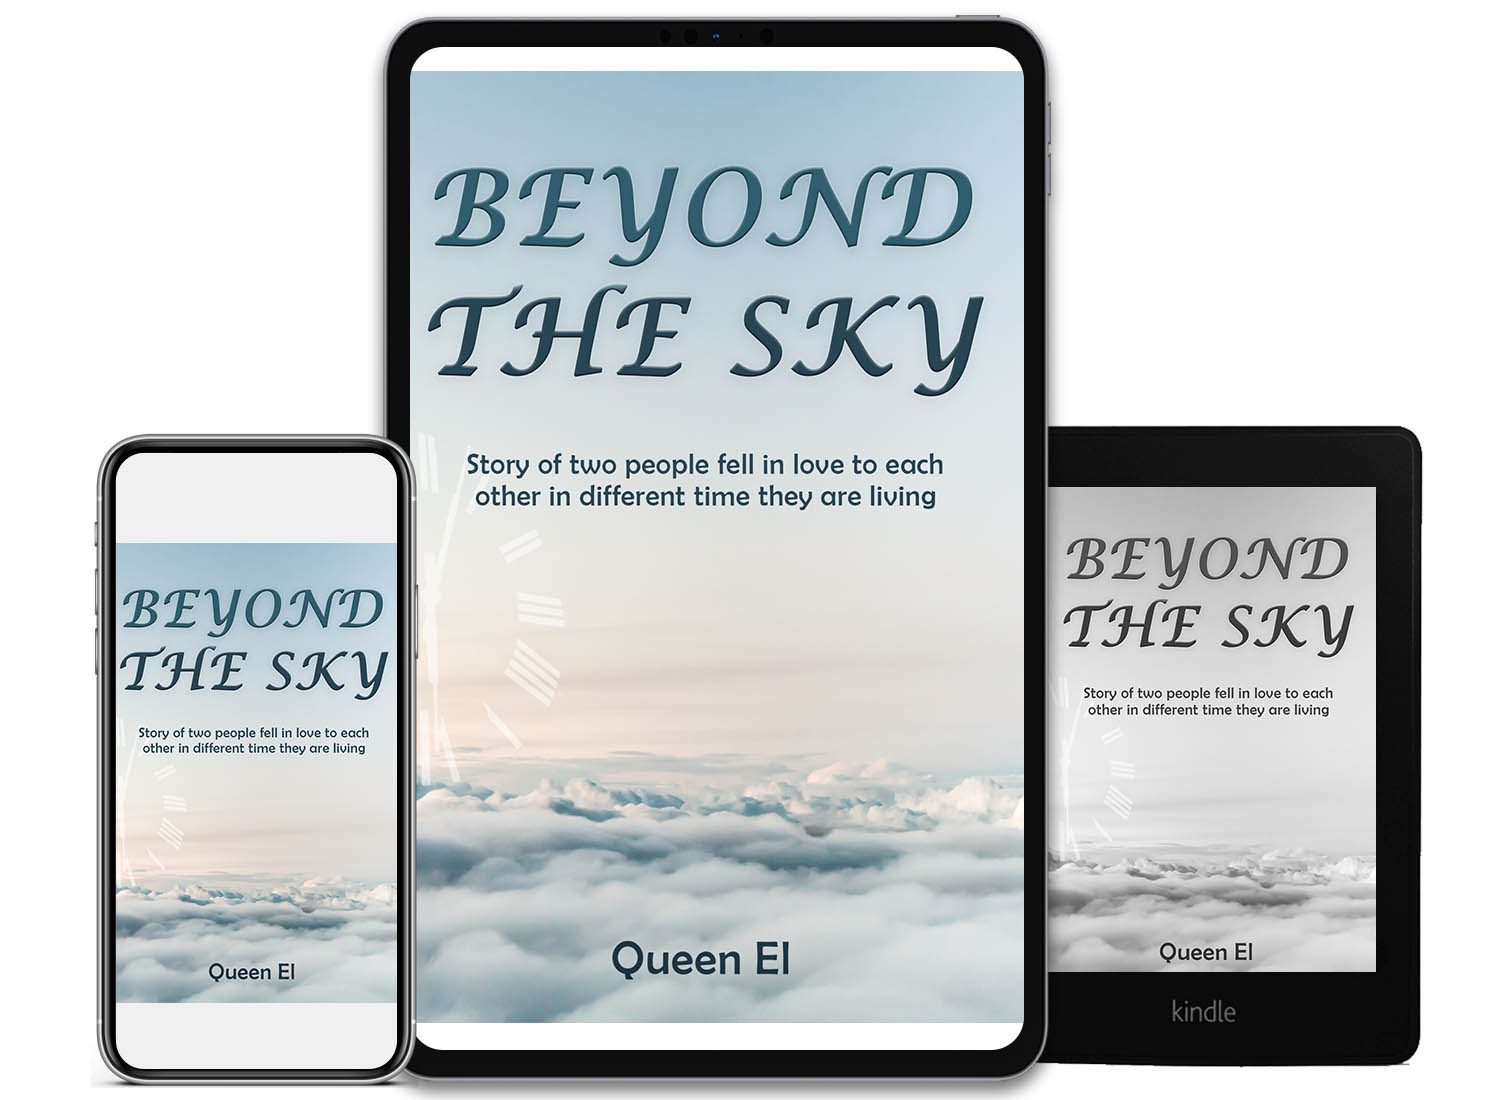 bookconsilio-portfolio-beyond-the-sky-Countries-ebookcoverdesign